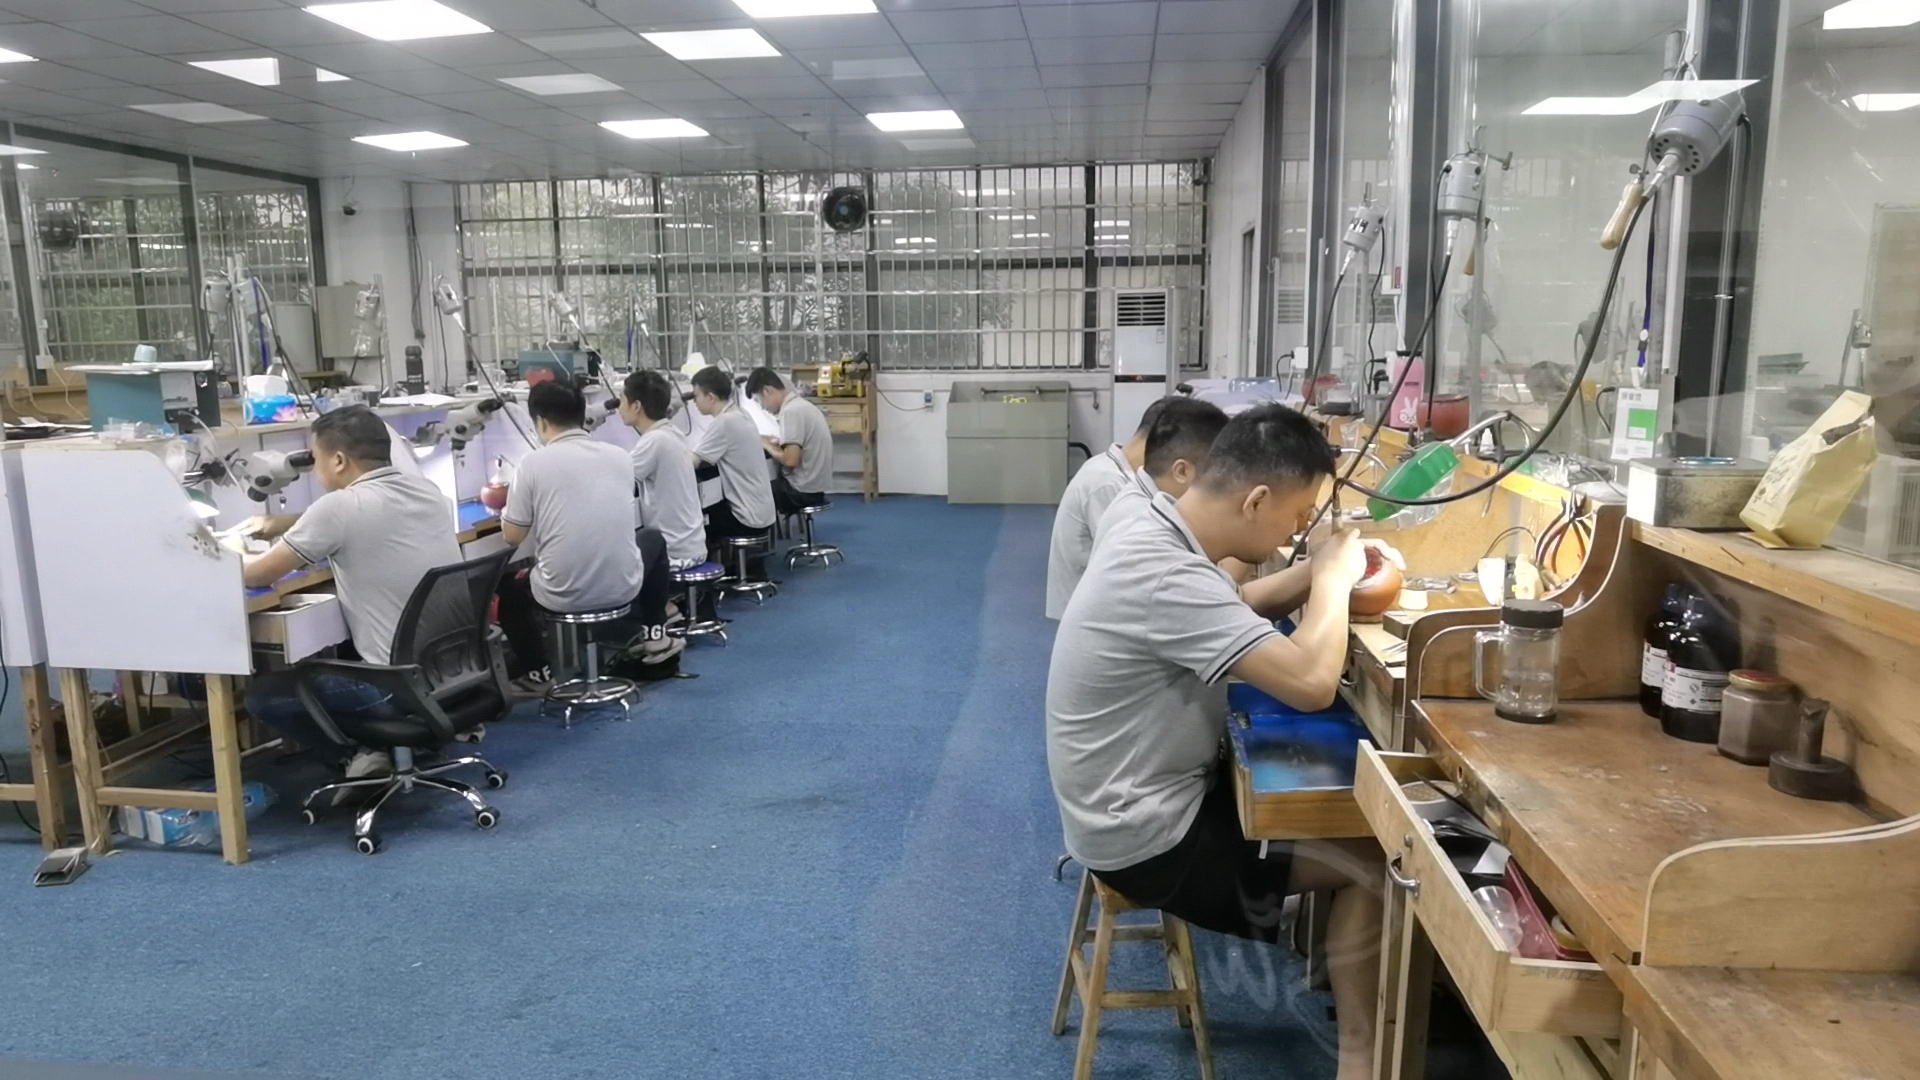 郴州玺钻珠宝首饰有限公司生产车间里,工人正在进行执模作业